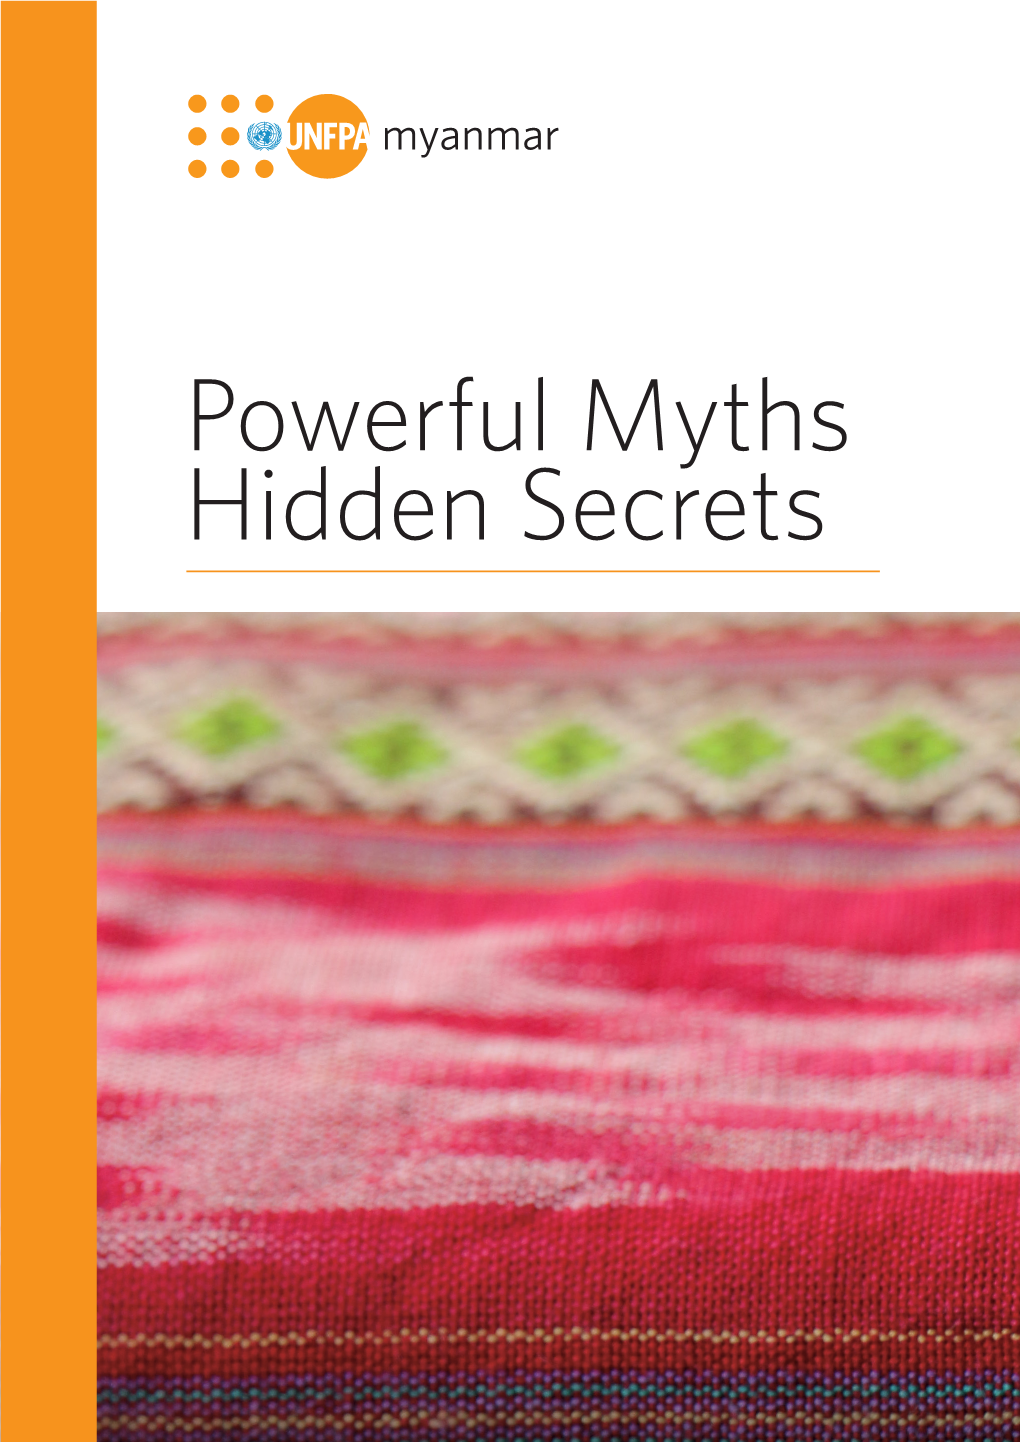 Powerful Myths Hidden Secrets 2017 - Edited Powerful Myths Hidden Secrets —